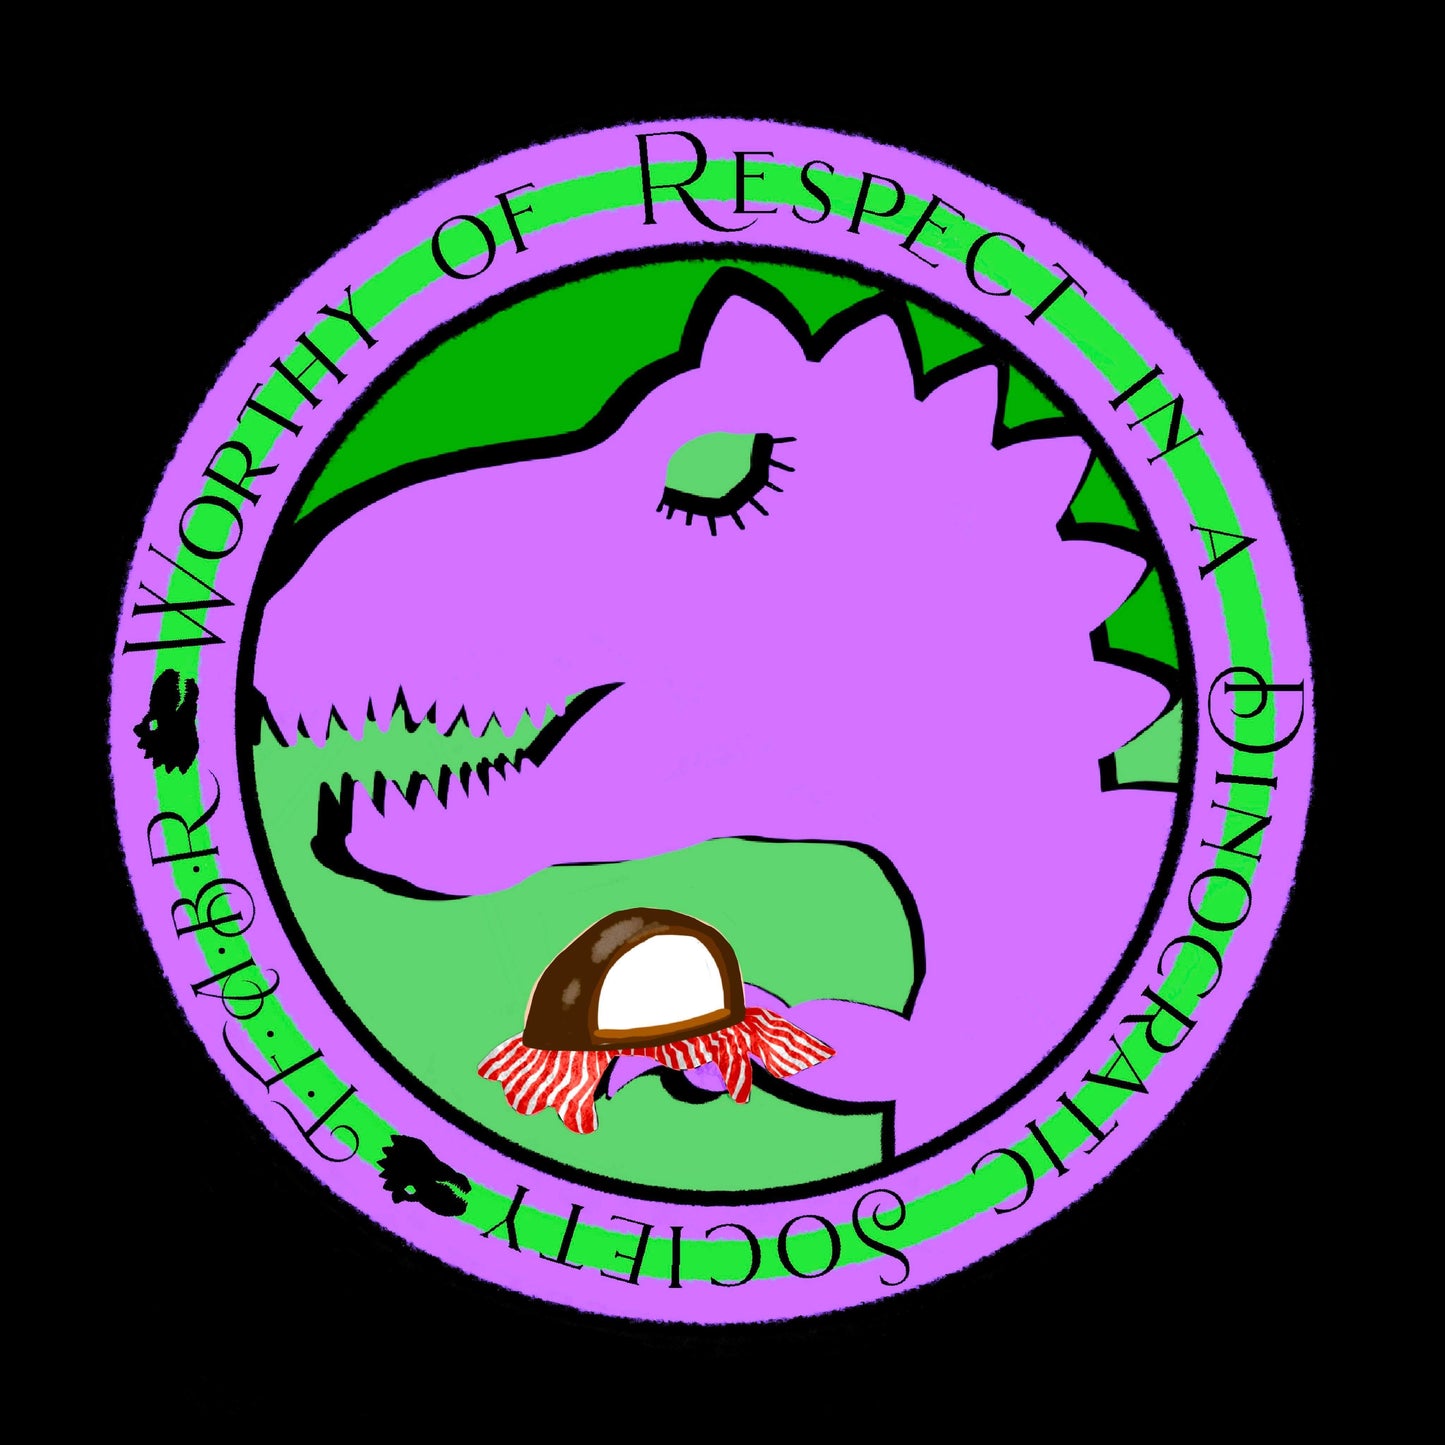 Dinocratic Society